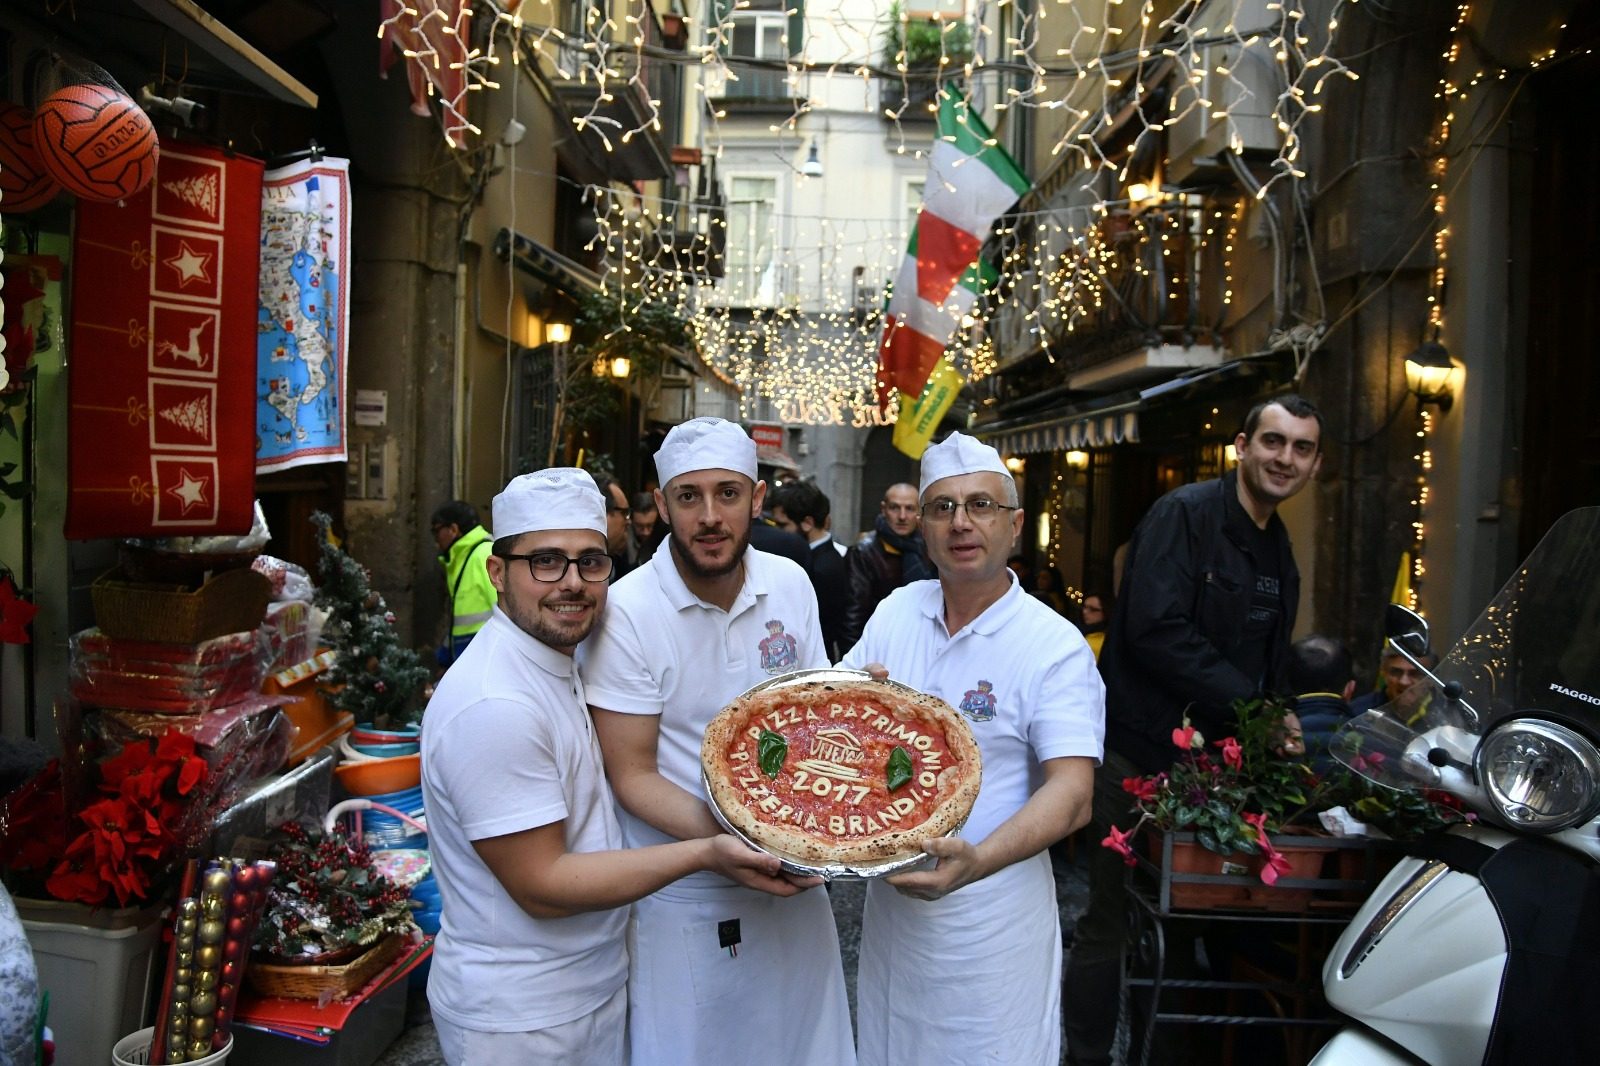 أمام مطعم Pizzeria Brandi في نابولي، خلال الاحتفال بإدراج فن صناعة البيتزا إلى قائمة التراث العالمي / Getty Images